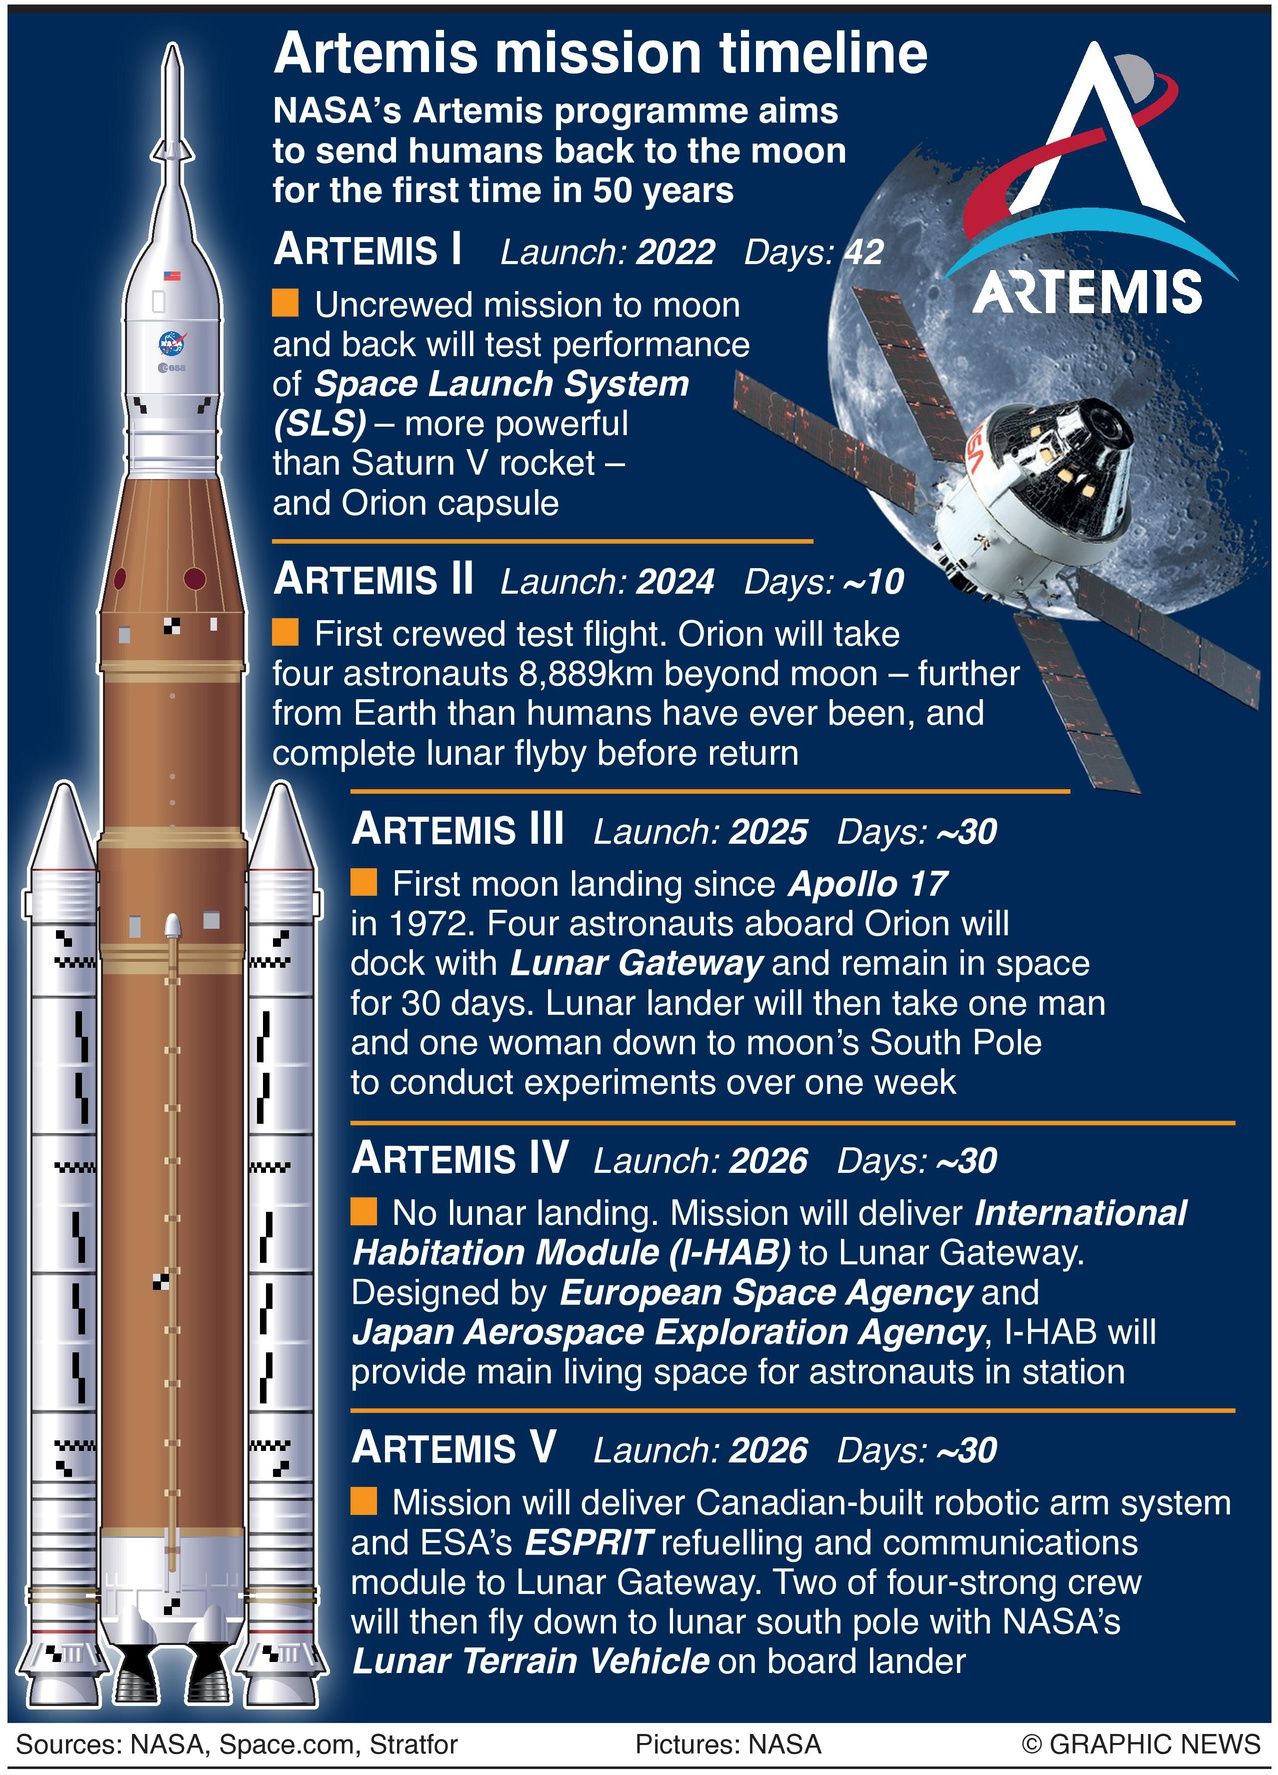 Artemis 1 mission timeline